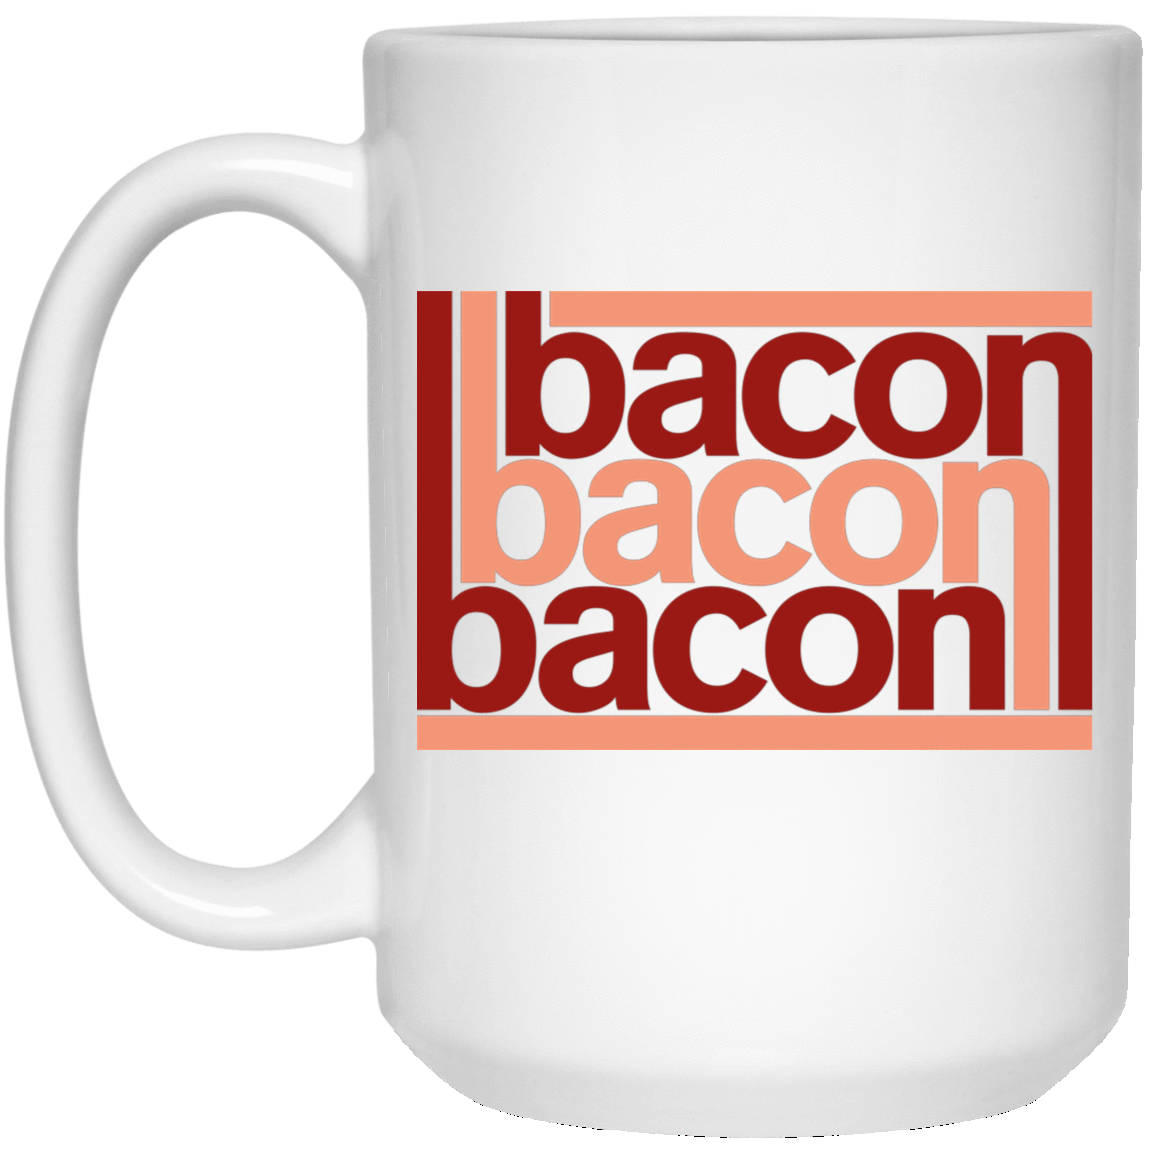 Drinkware White / One Size Bacon-Bacon-Bacon 15oz Mug